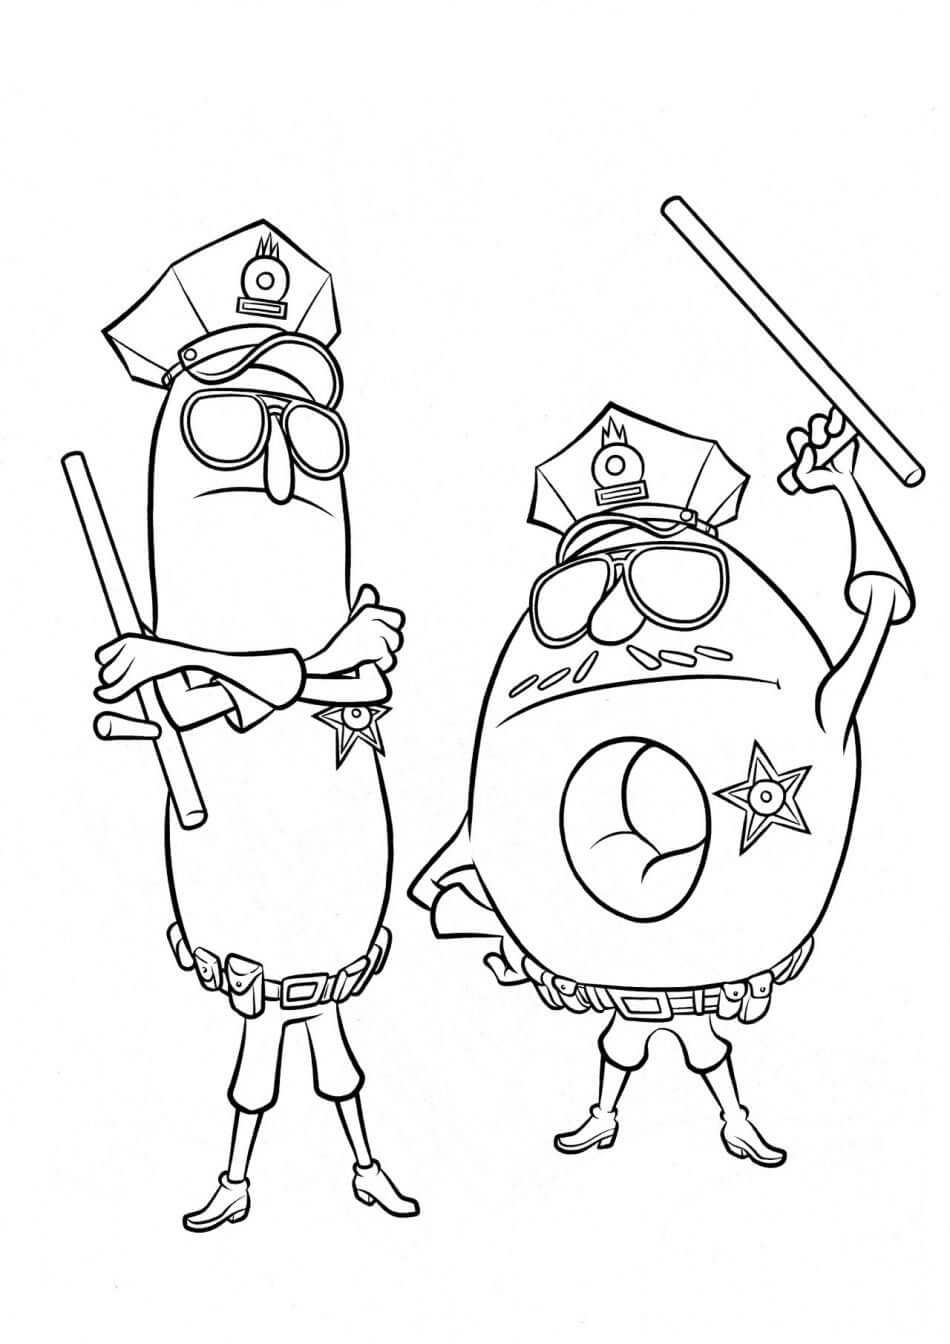 Donut y Amigo de Dibujos Animados